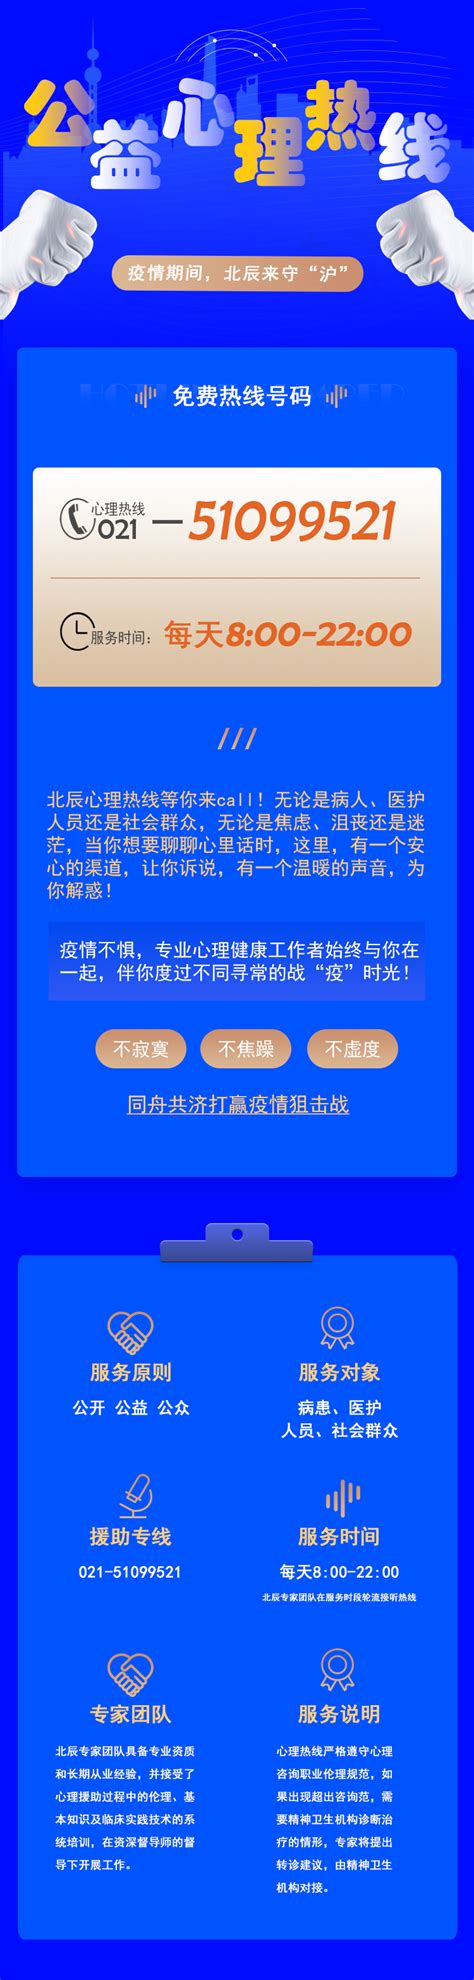 心理危机干预系统-上海北辰软件股份有限公司